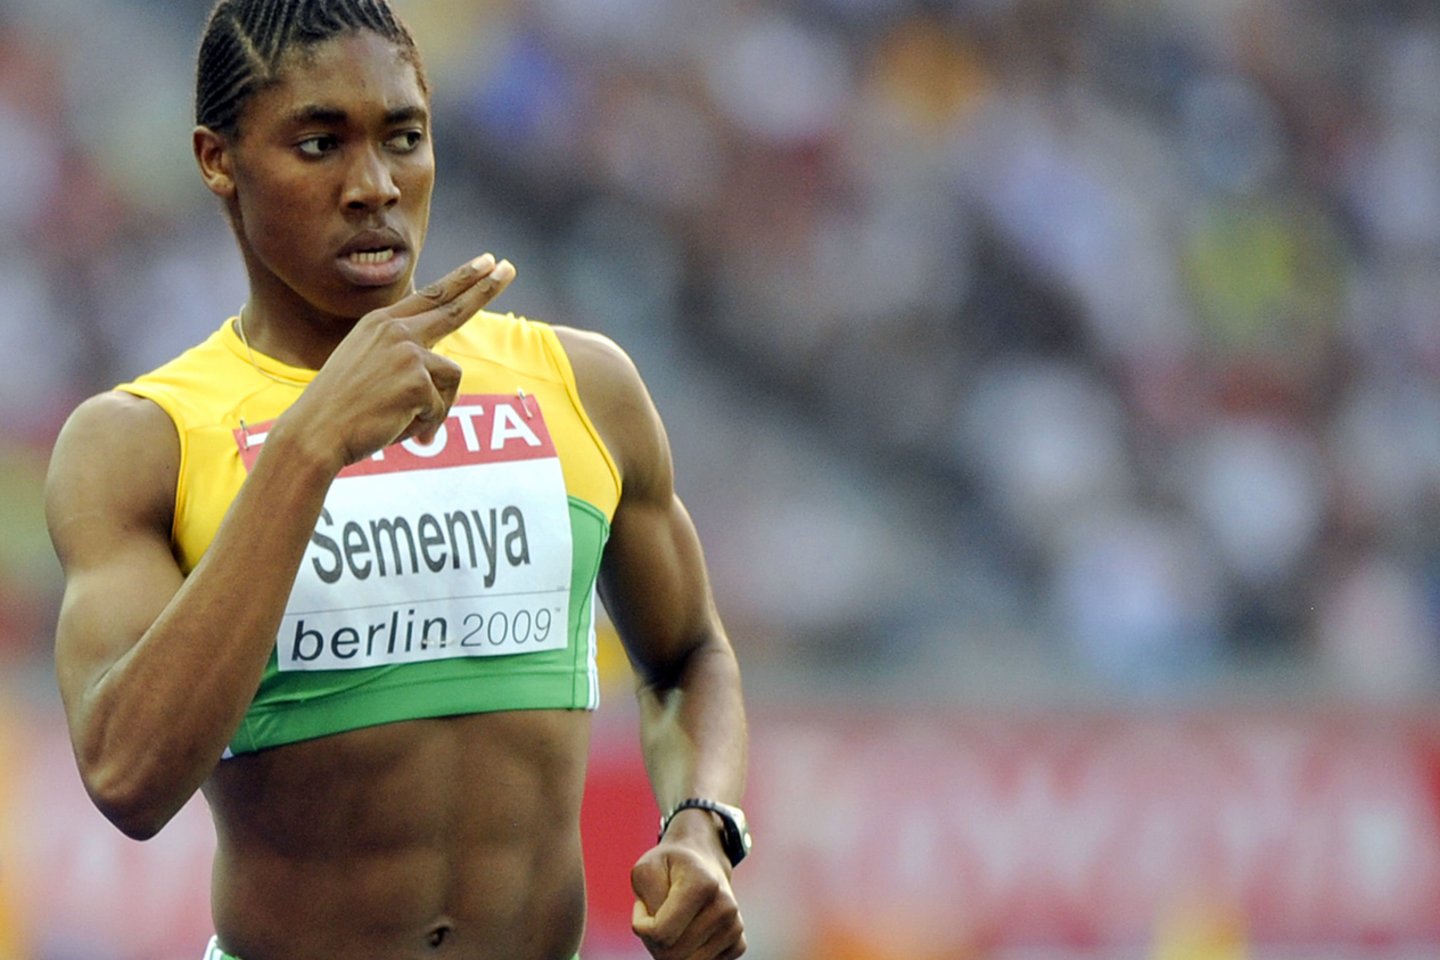  C.Semenya per 2009 metų pasaulio čempionatą Berlyne. Prieš jį sportininkei buvo atliktas lyties tyrimas, tačiau jai buvo pasakyta, kad tai buvo dopingo testas.<br> AFP/Scanpix nuotr.